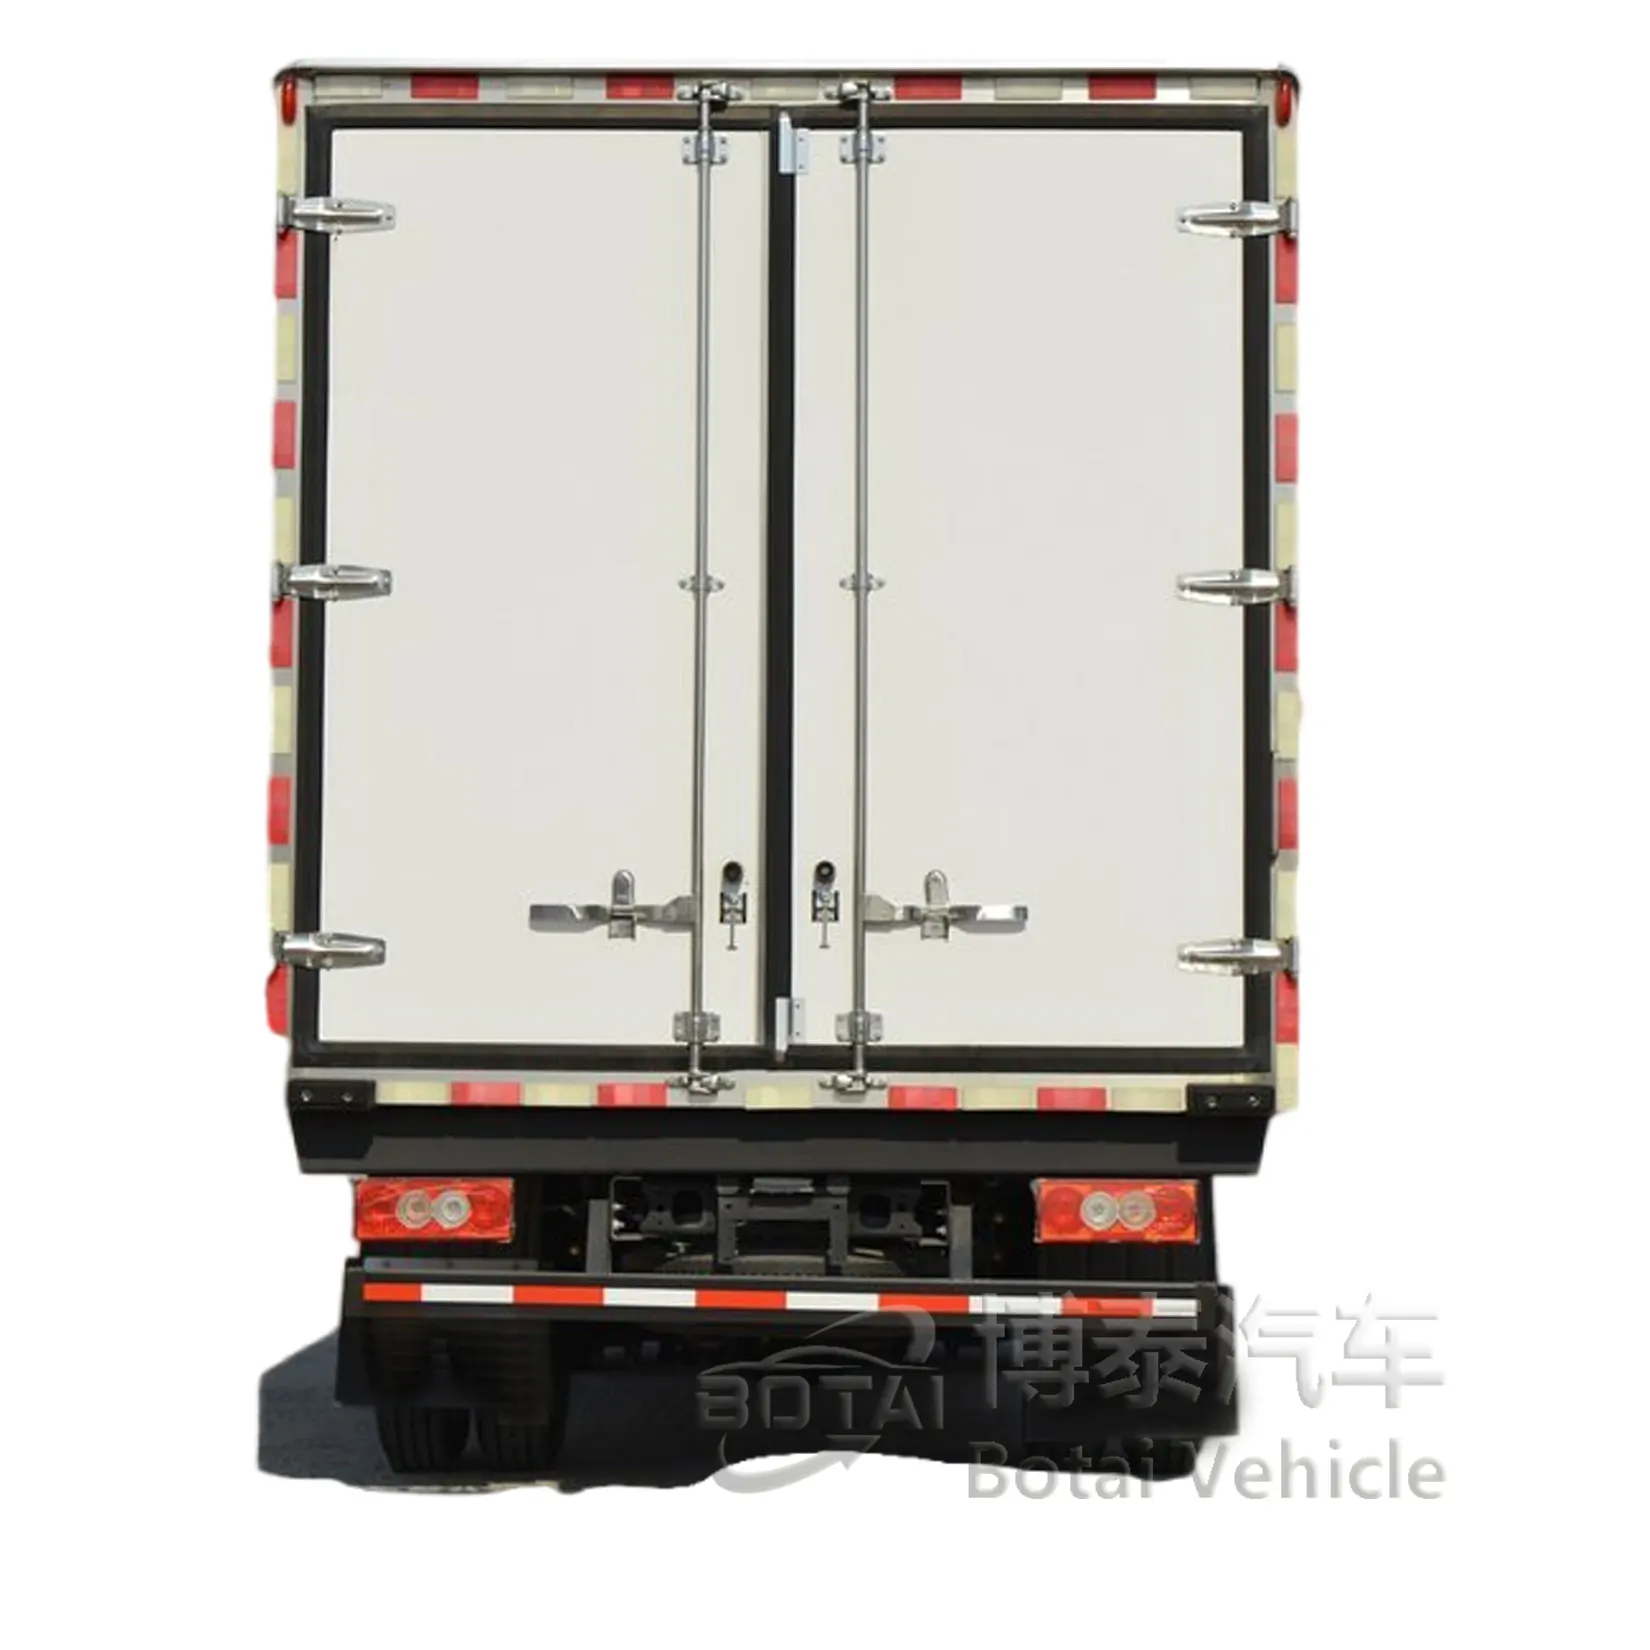 Foton kem giao hàng Xe tải vận chuyển tươi nhà sản xuất xe tải lạnh xe tải